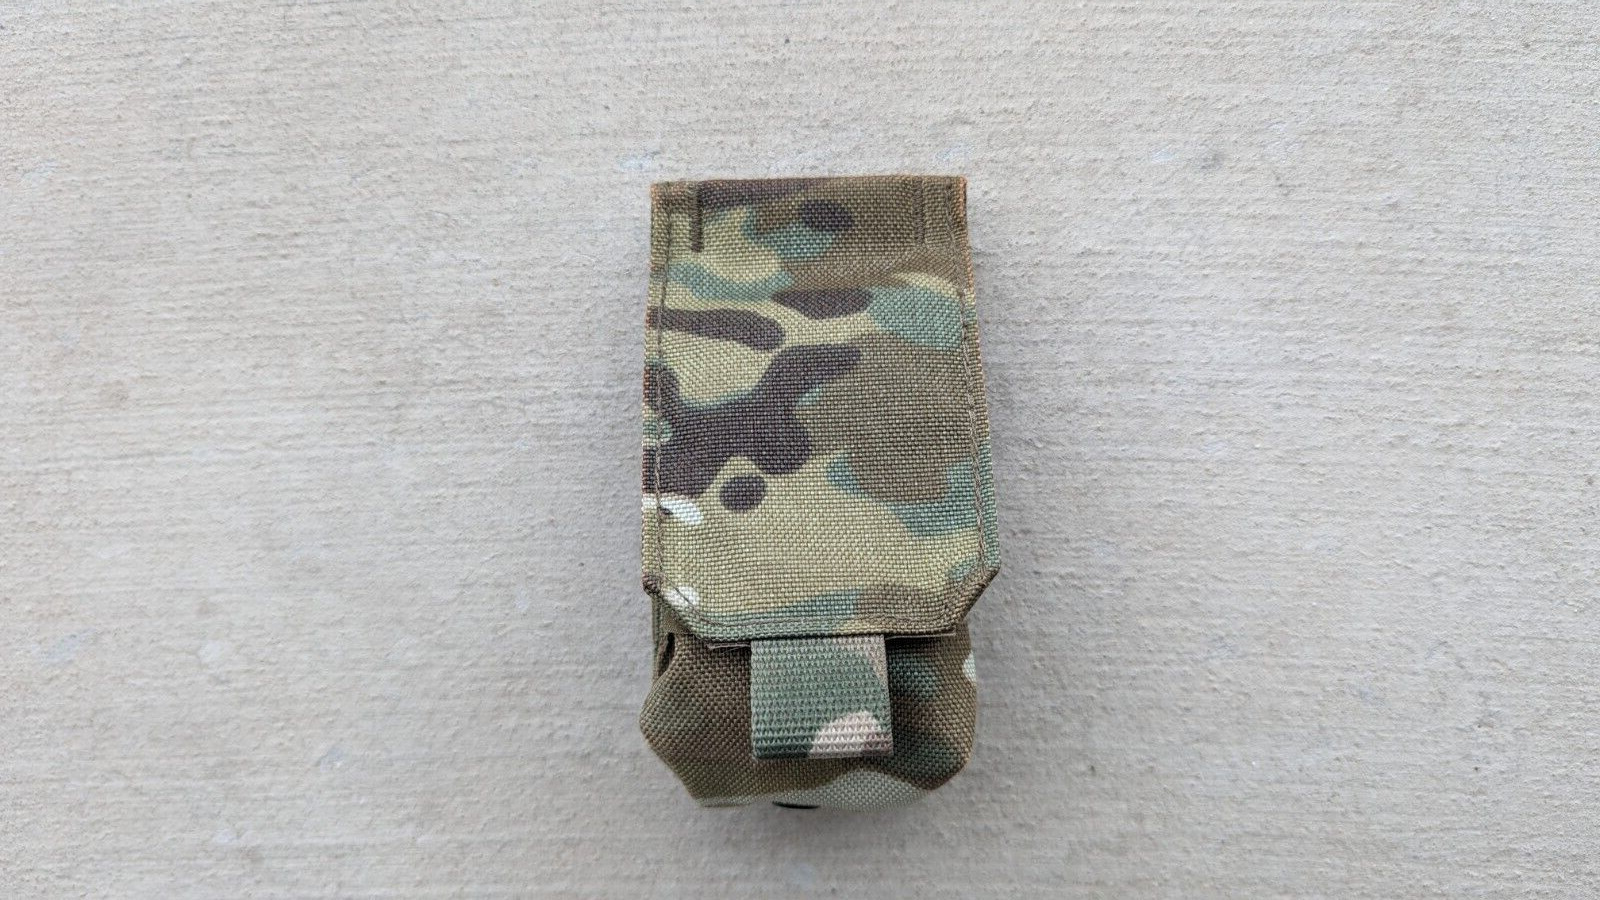 WARTECH Gear GP-101 RGD RGO Grenade Pouch Multicam SOBR MVD Russia Spetsnaz SWAT